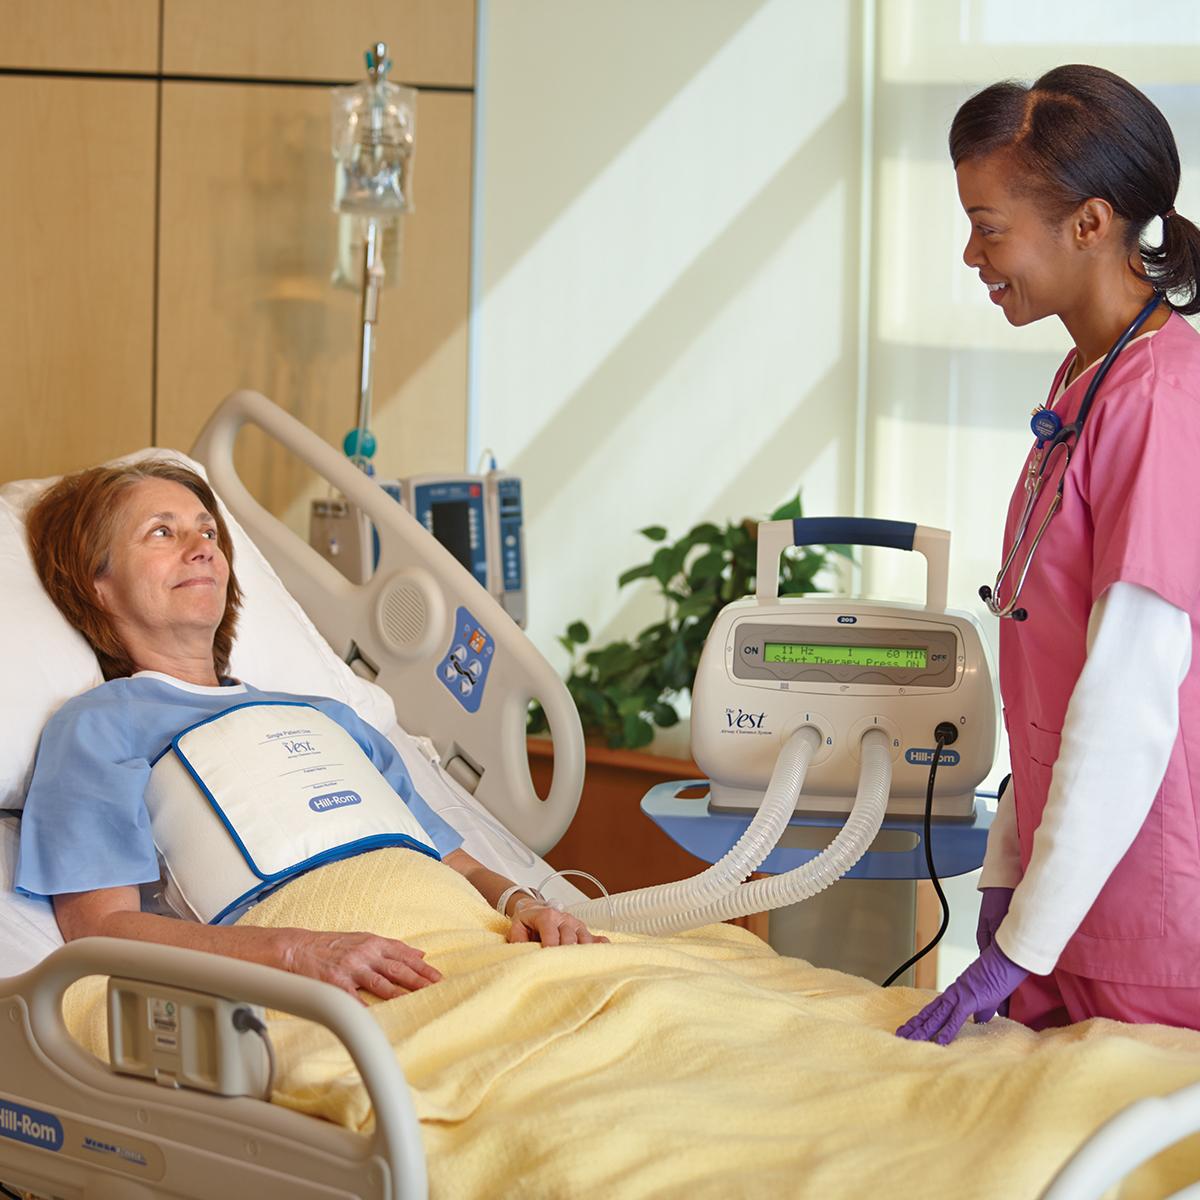 Pacjent w szpitalnym łóżku poddawany terapii za pomocą systemu The Vest, model 205.